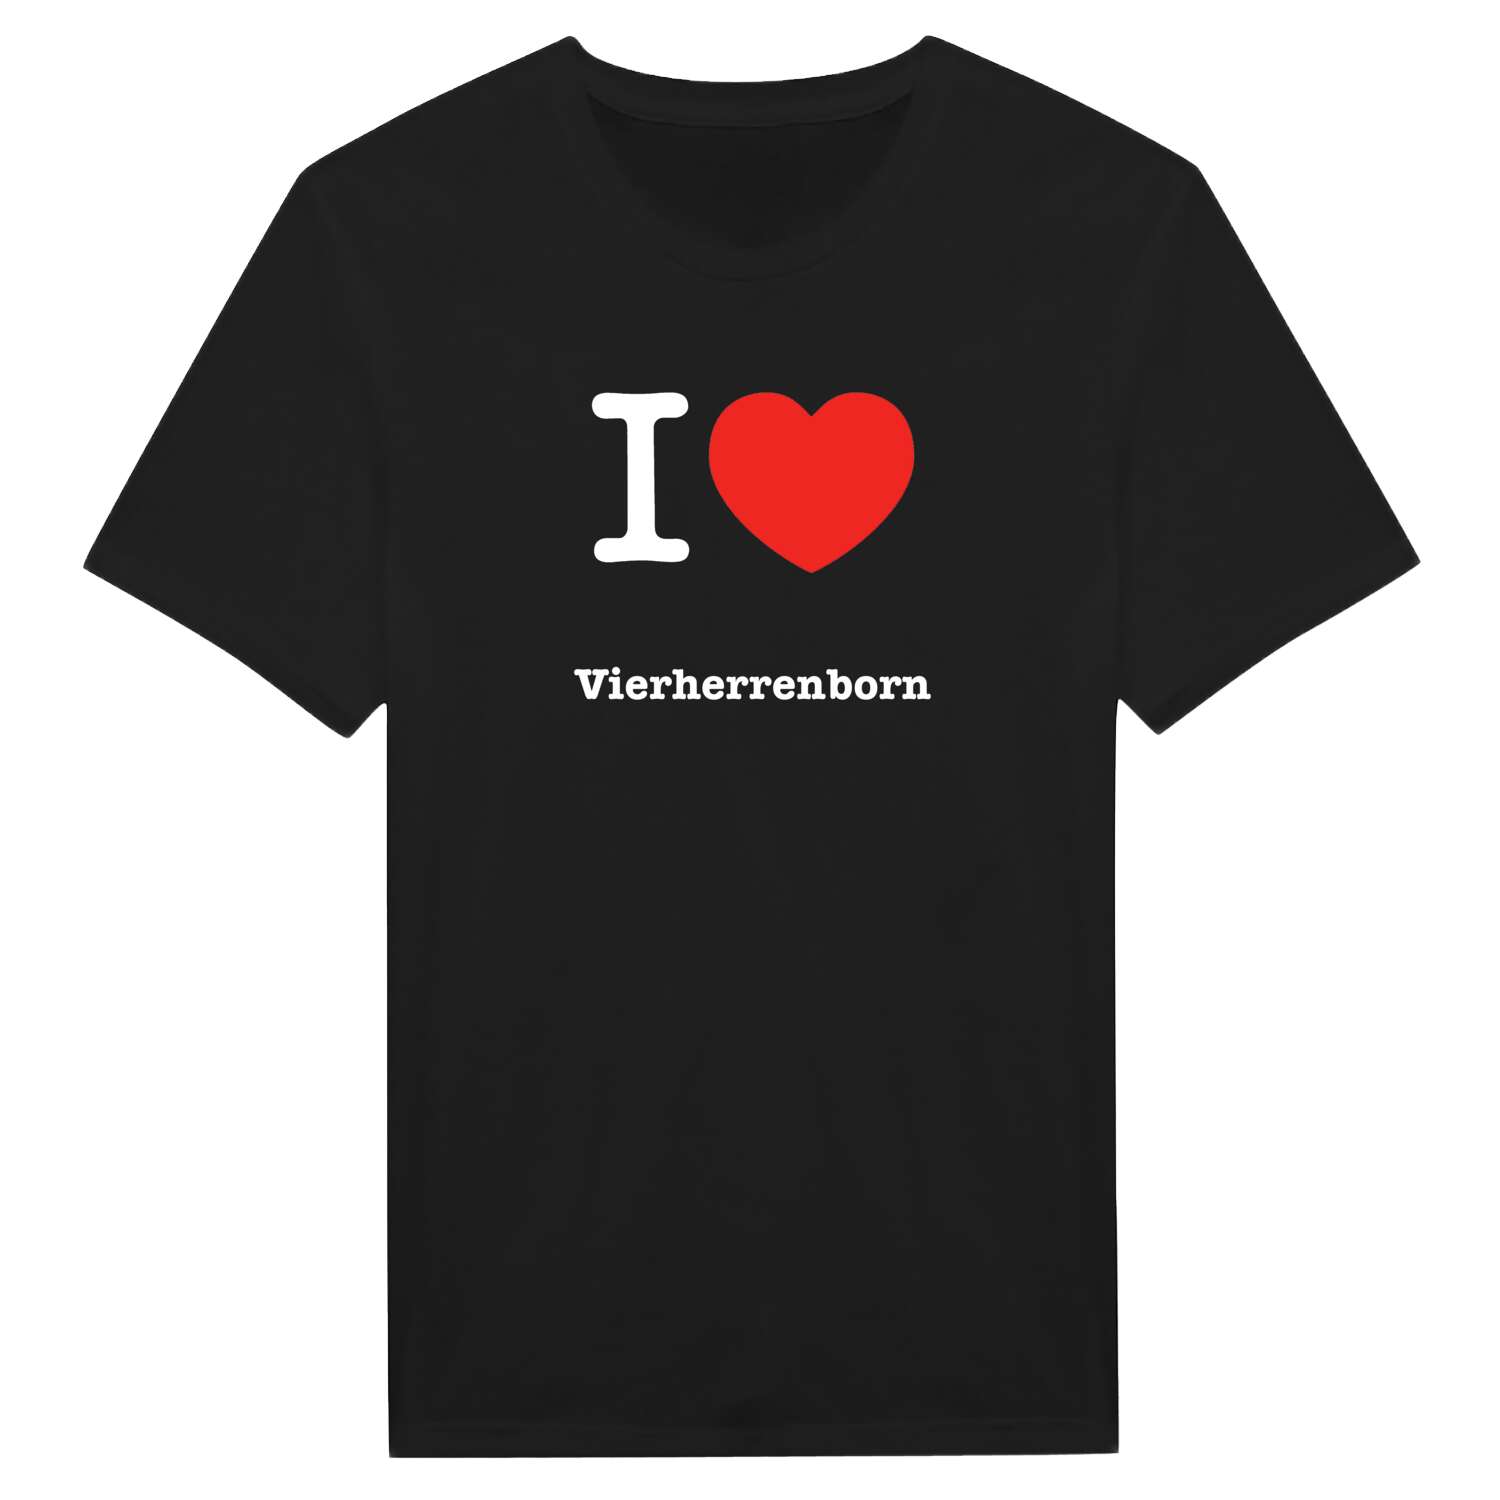 Vierherrenborn T-Shirt »I love«